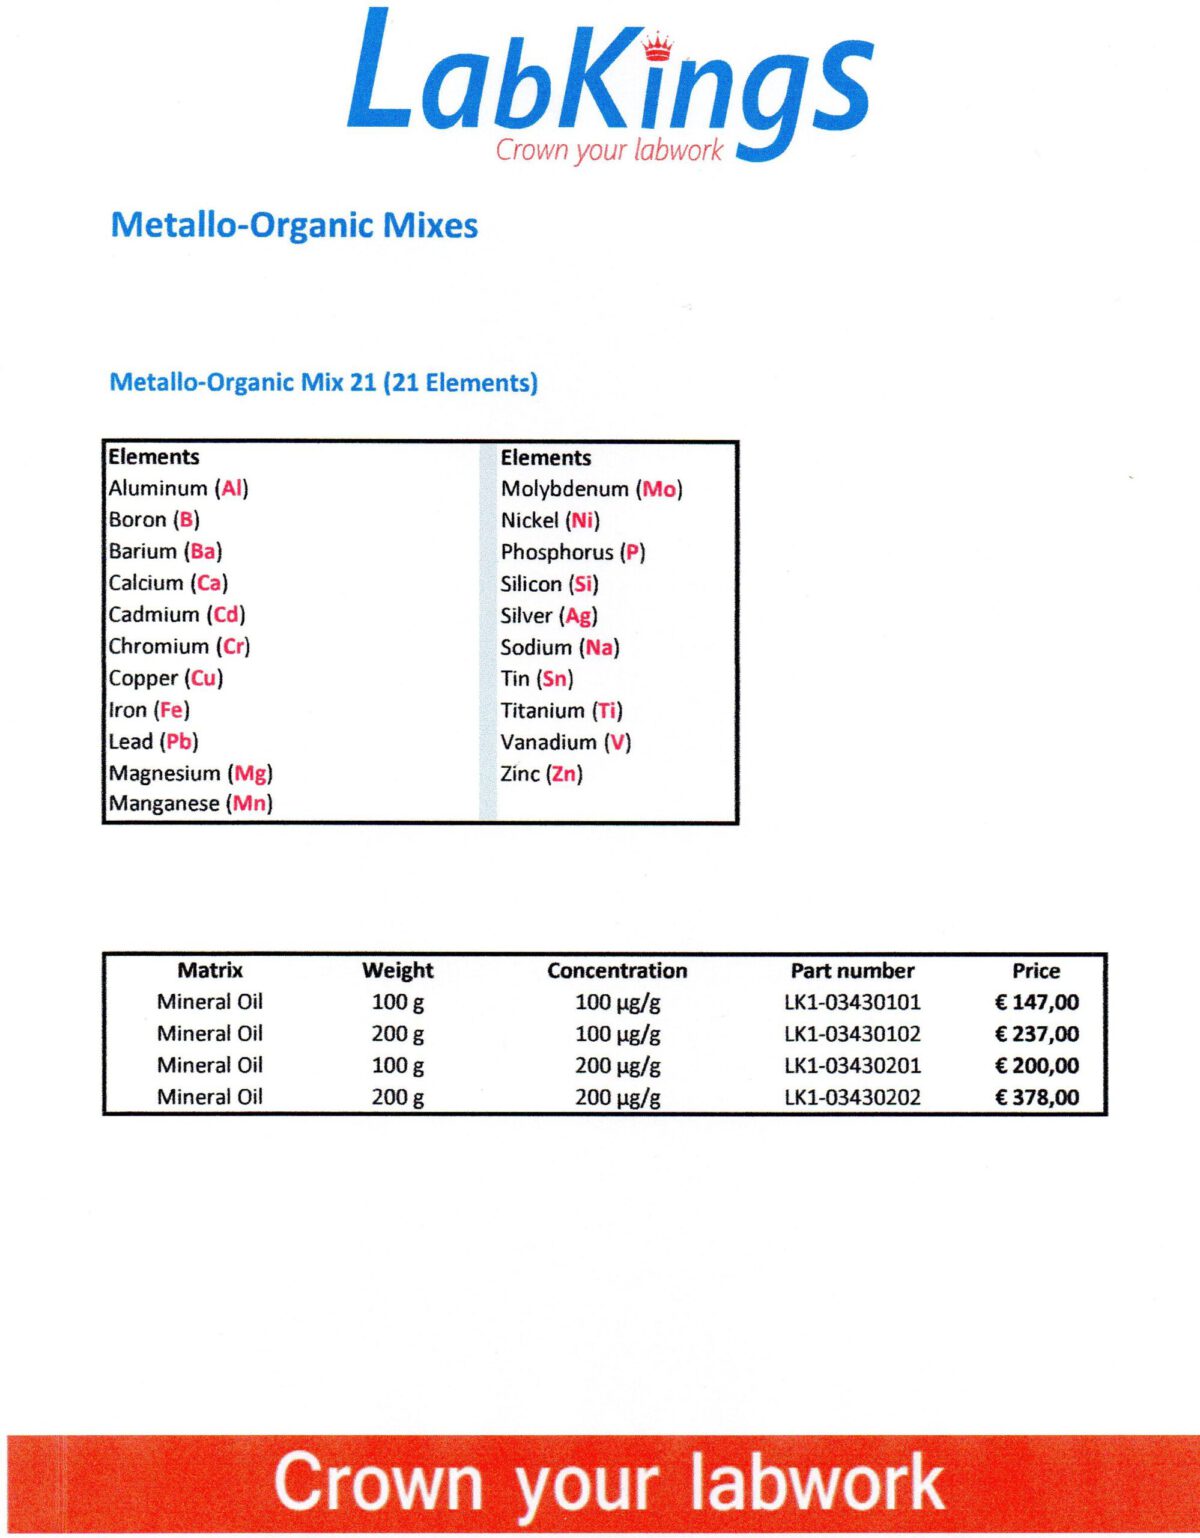 Metallo-Organic Mix 21, 100 ug/g, 200g